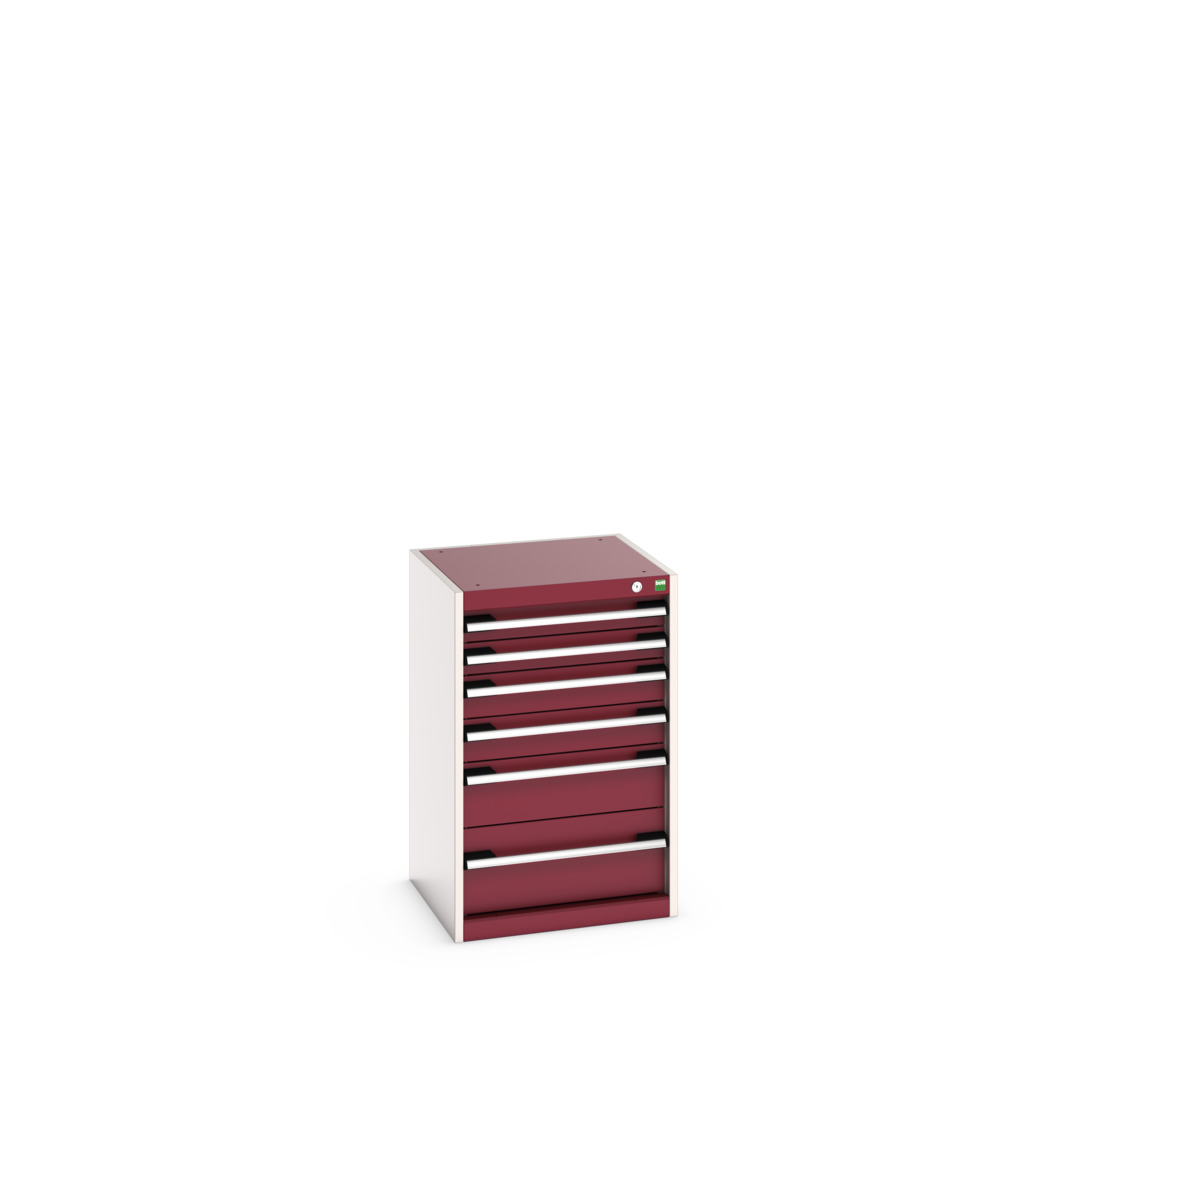 40010117.24V - cubio drawer cabinet